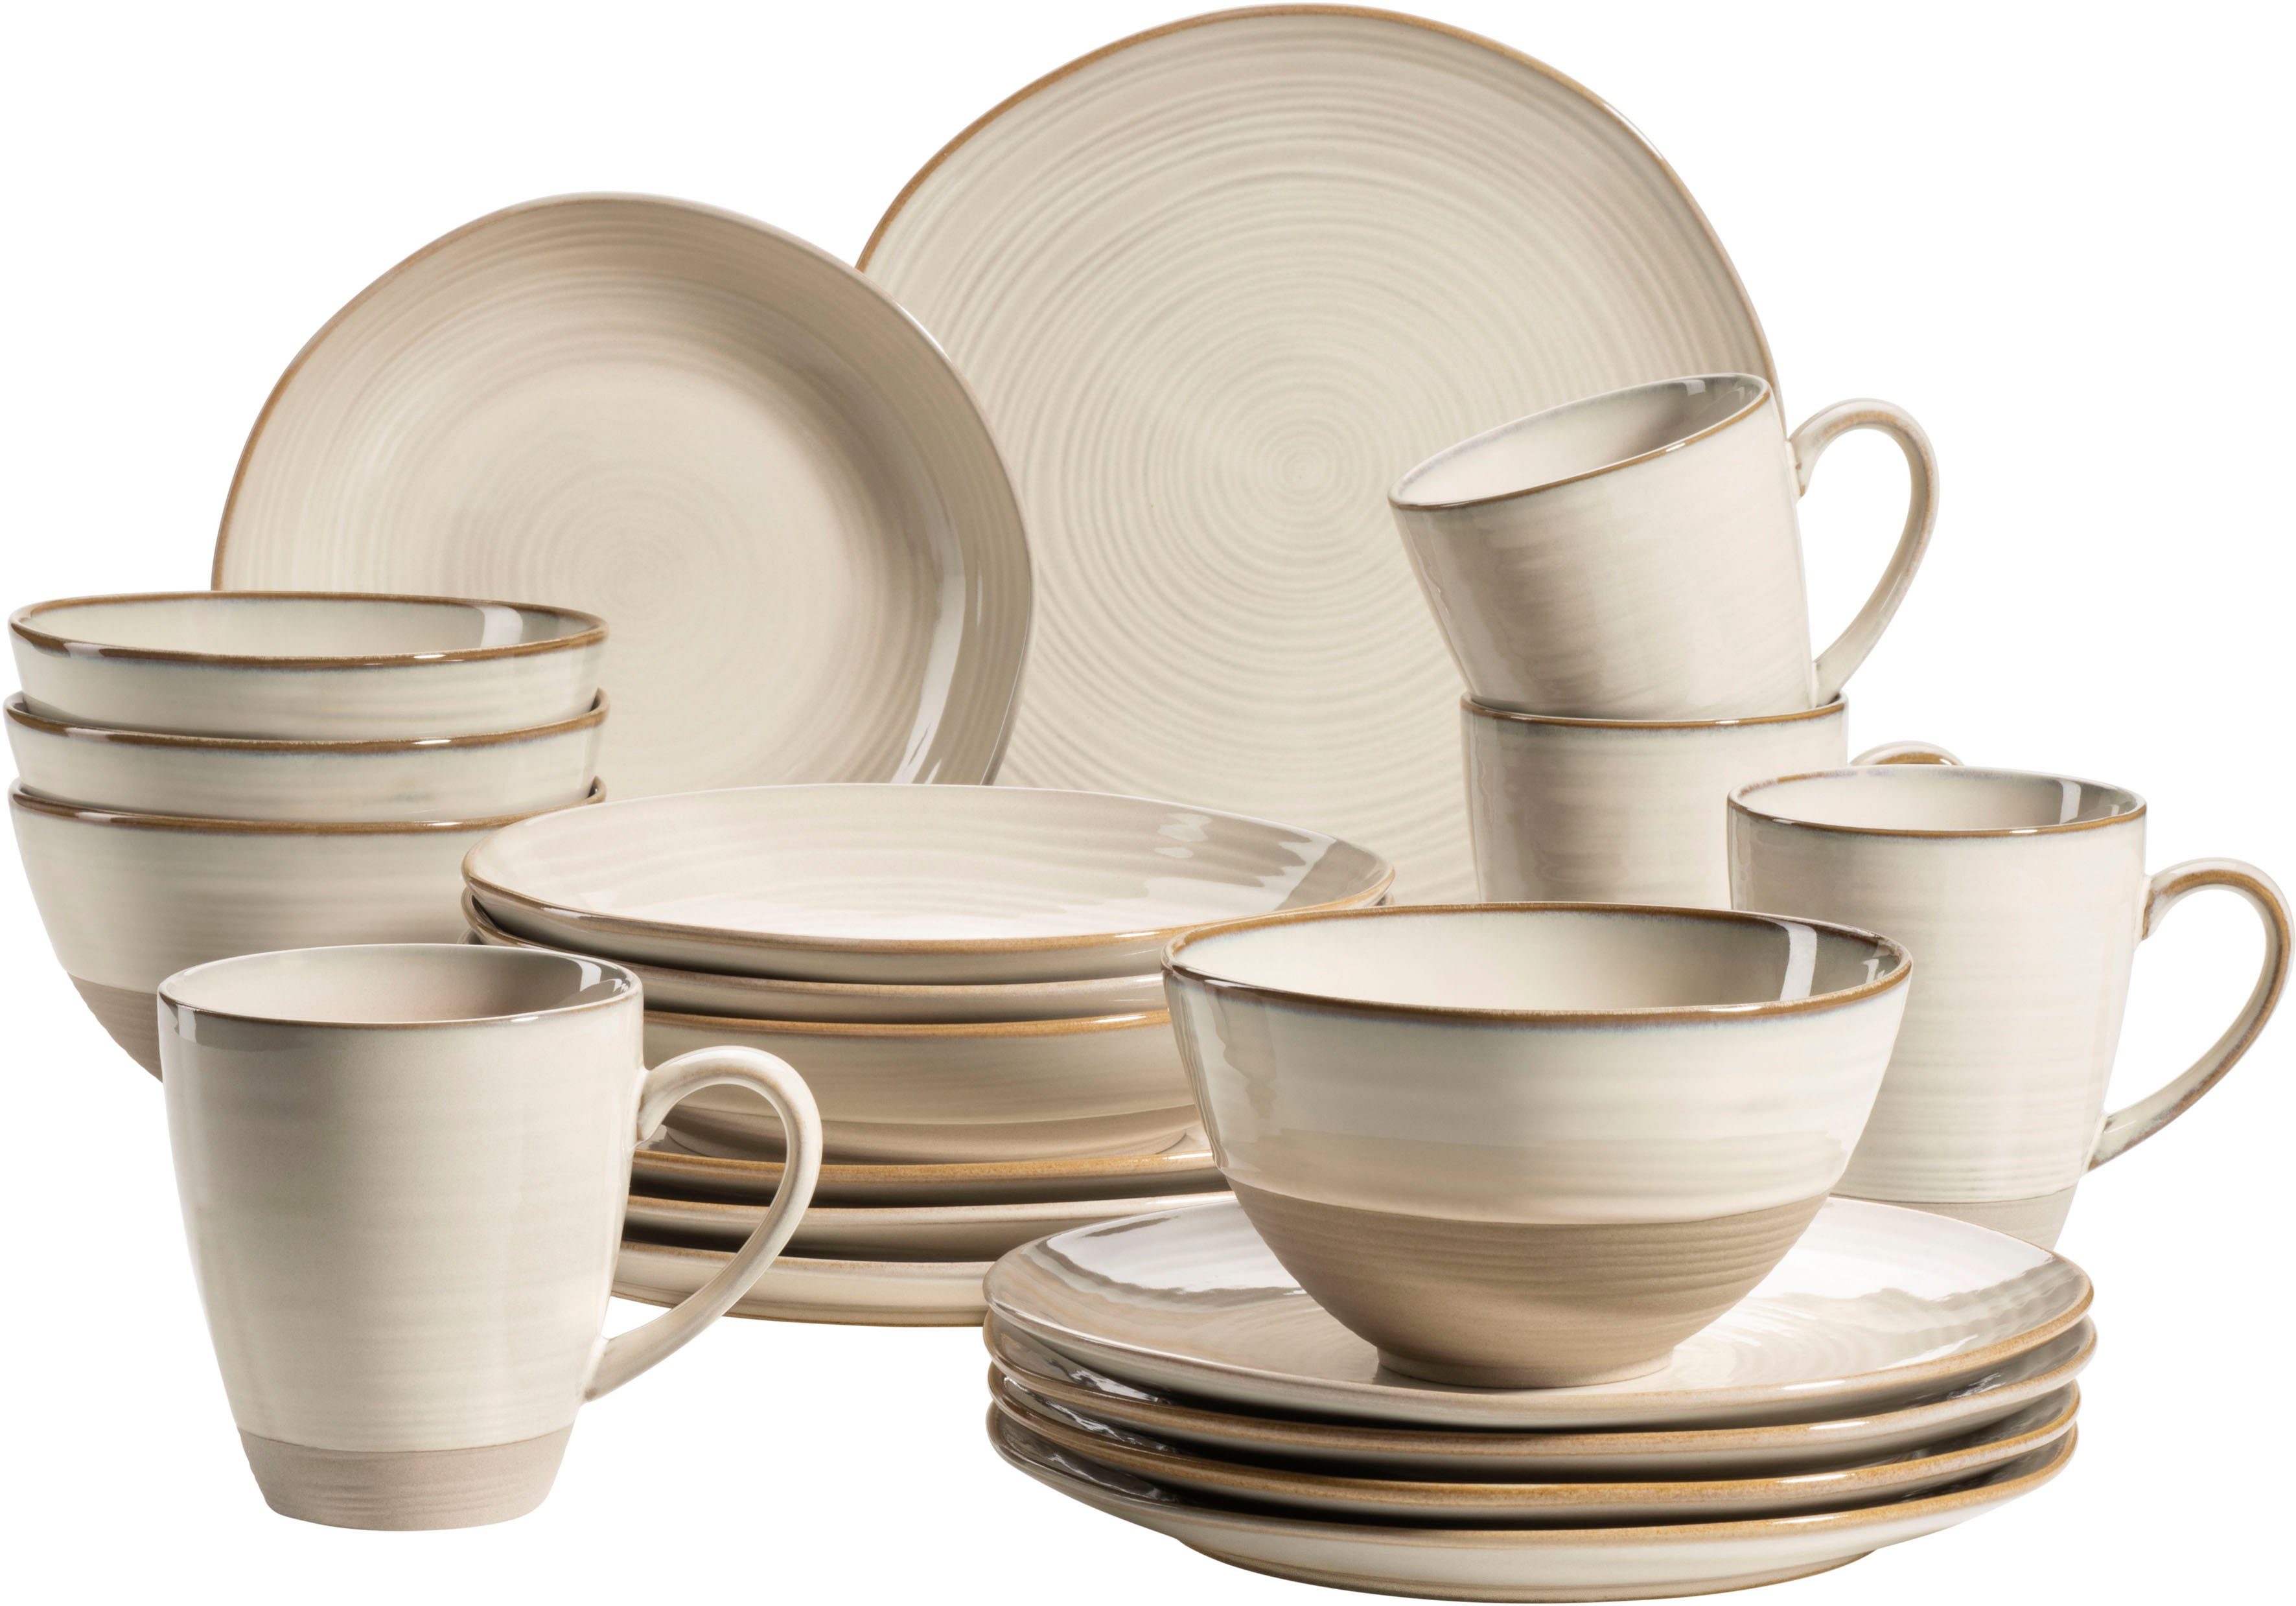 Beige Keramik Geschirr-Sets online | OTTO kaufen